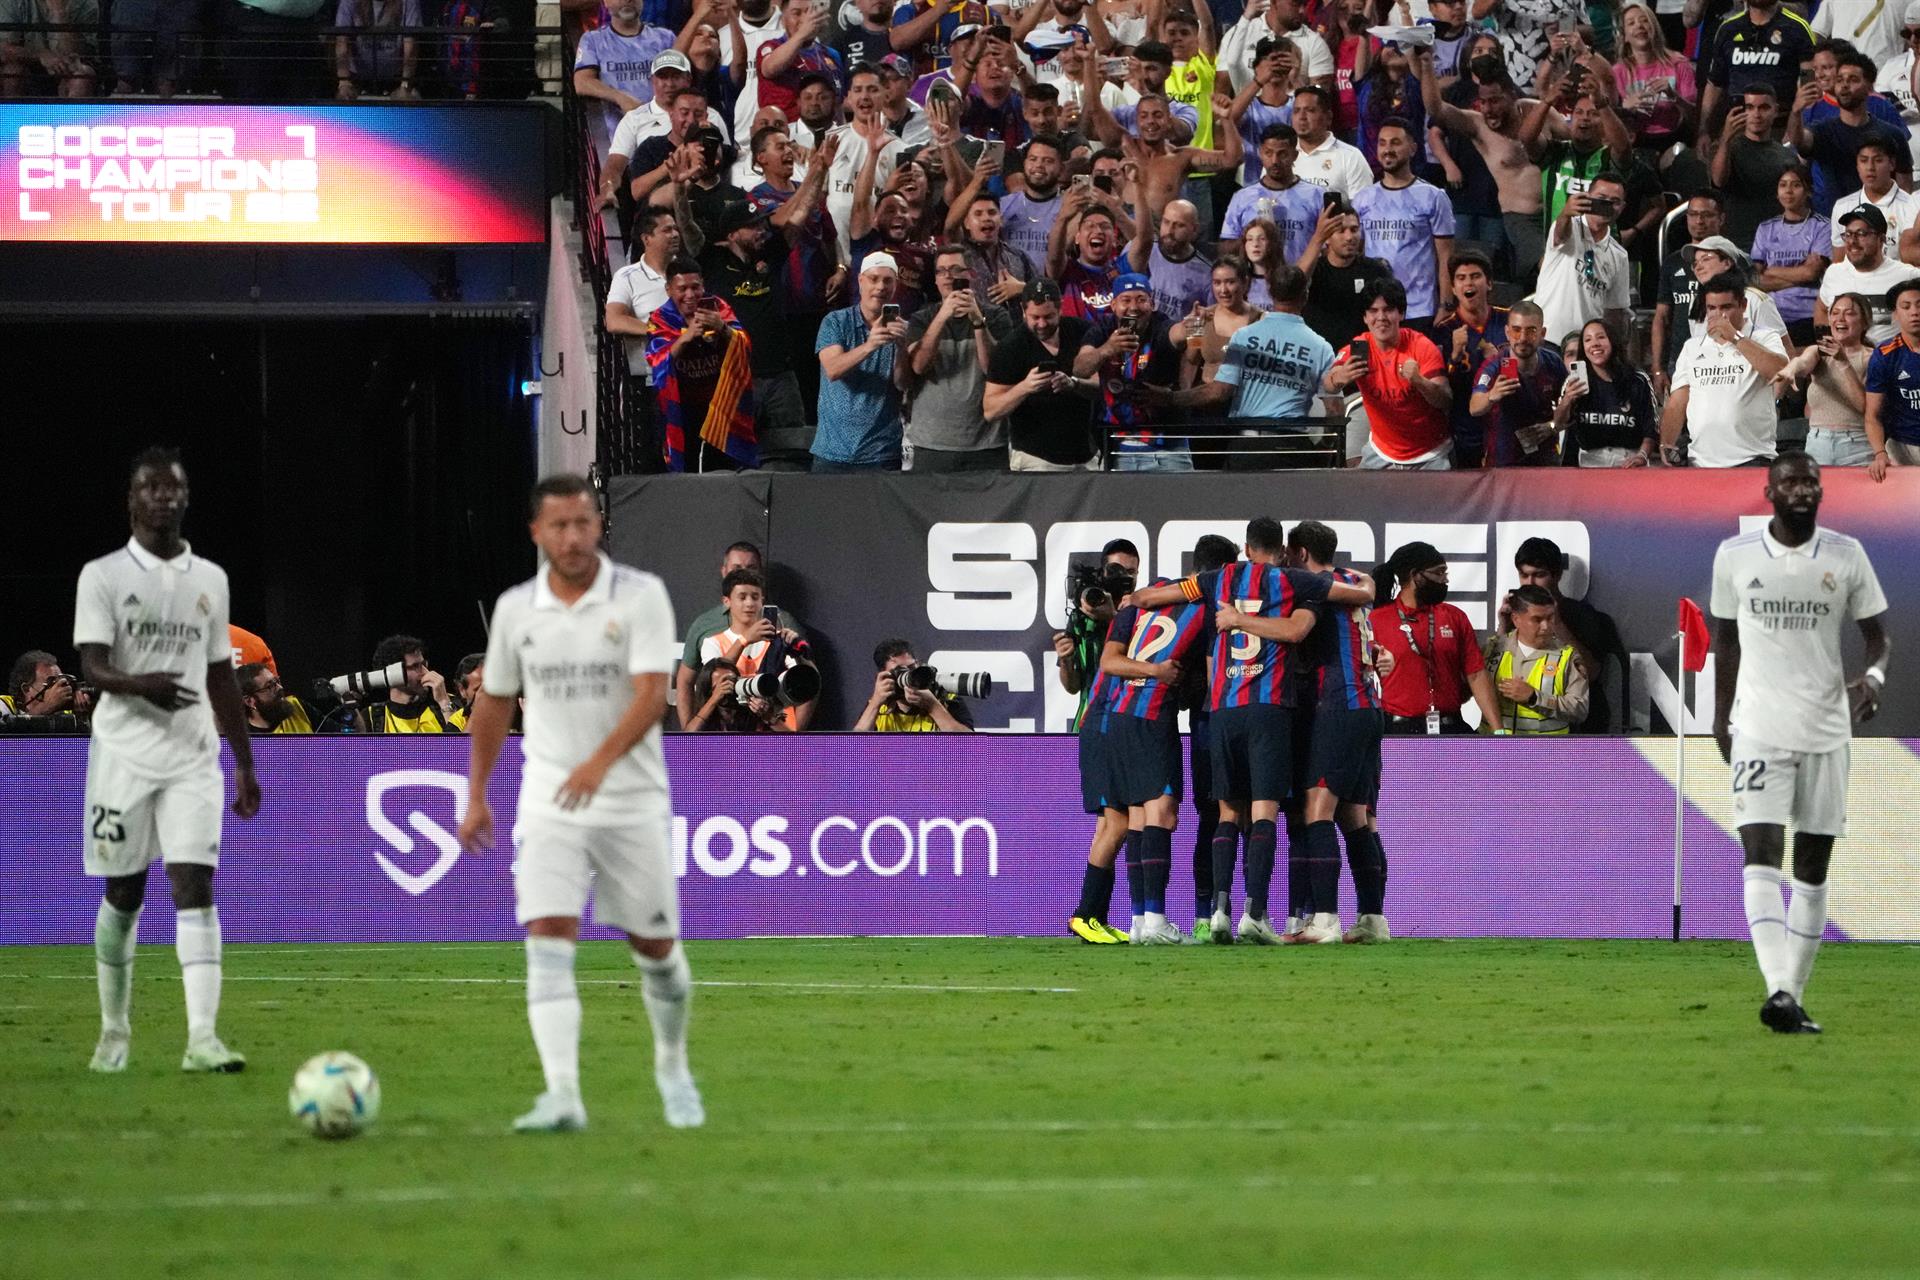 Jugadores del FC Barcelona celebran una anotación en la primera mitad del partido frente al Real Madrid en el Allegiant Stadium, en Las Vegas, Nevada (EE.UU.), este 23 de julio de 2022. EFE/EPA/Joe Buglewicz
